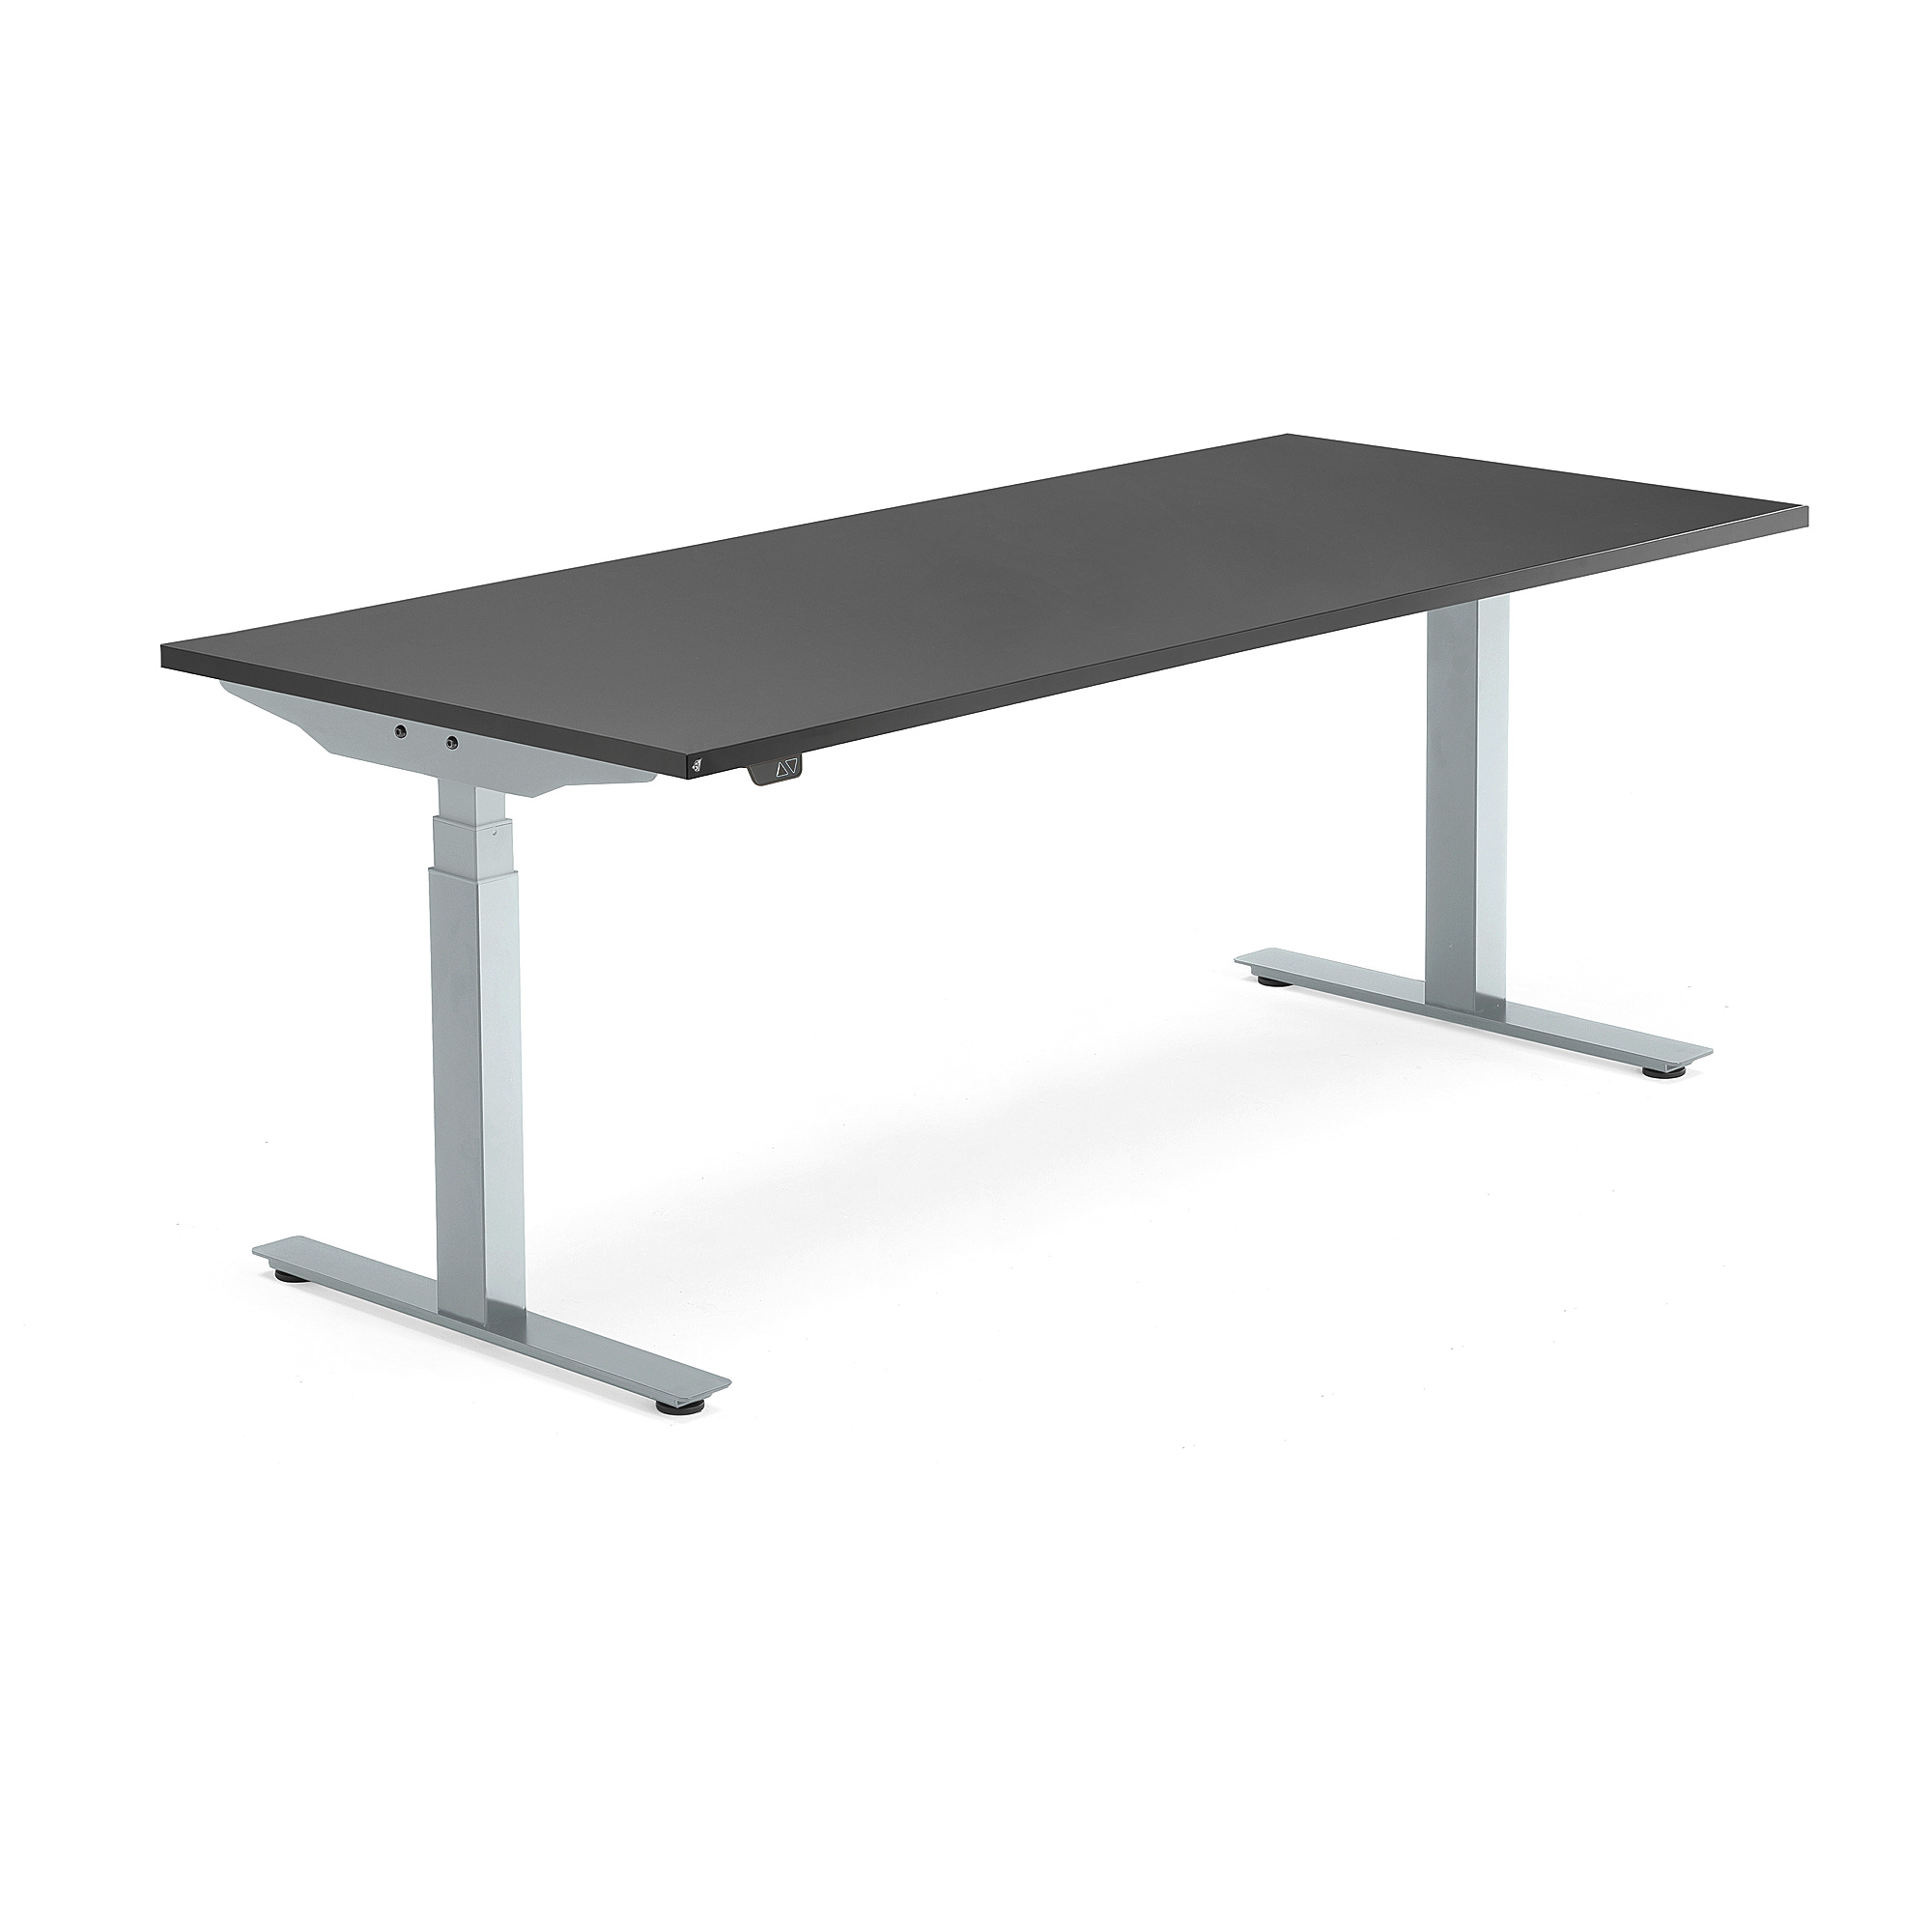 Výškově nastavitelný stůl MODULUS, 1800x800 mm, stříbrný rám, černá